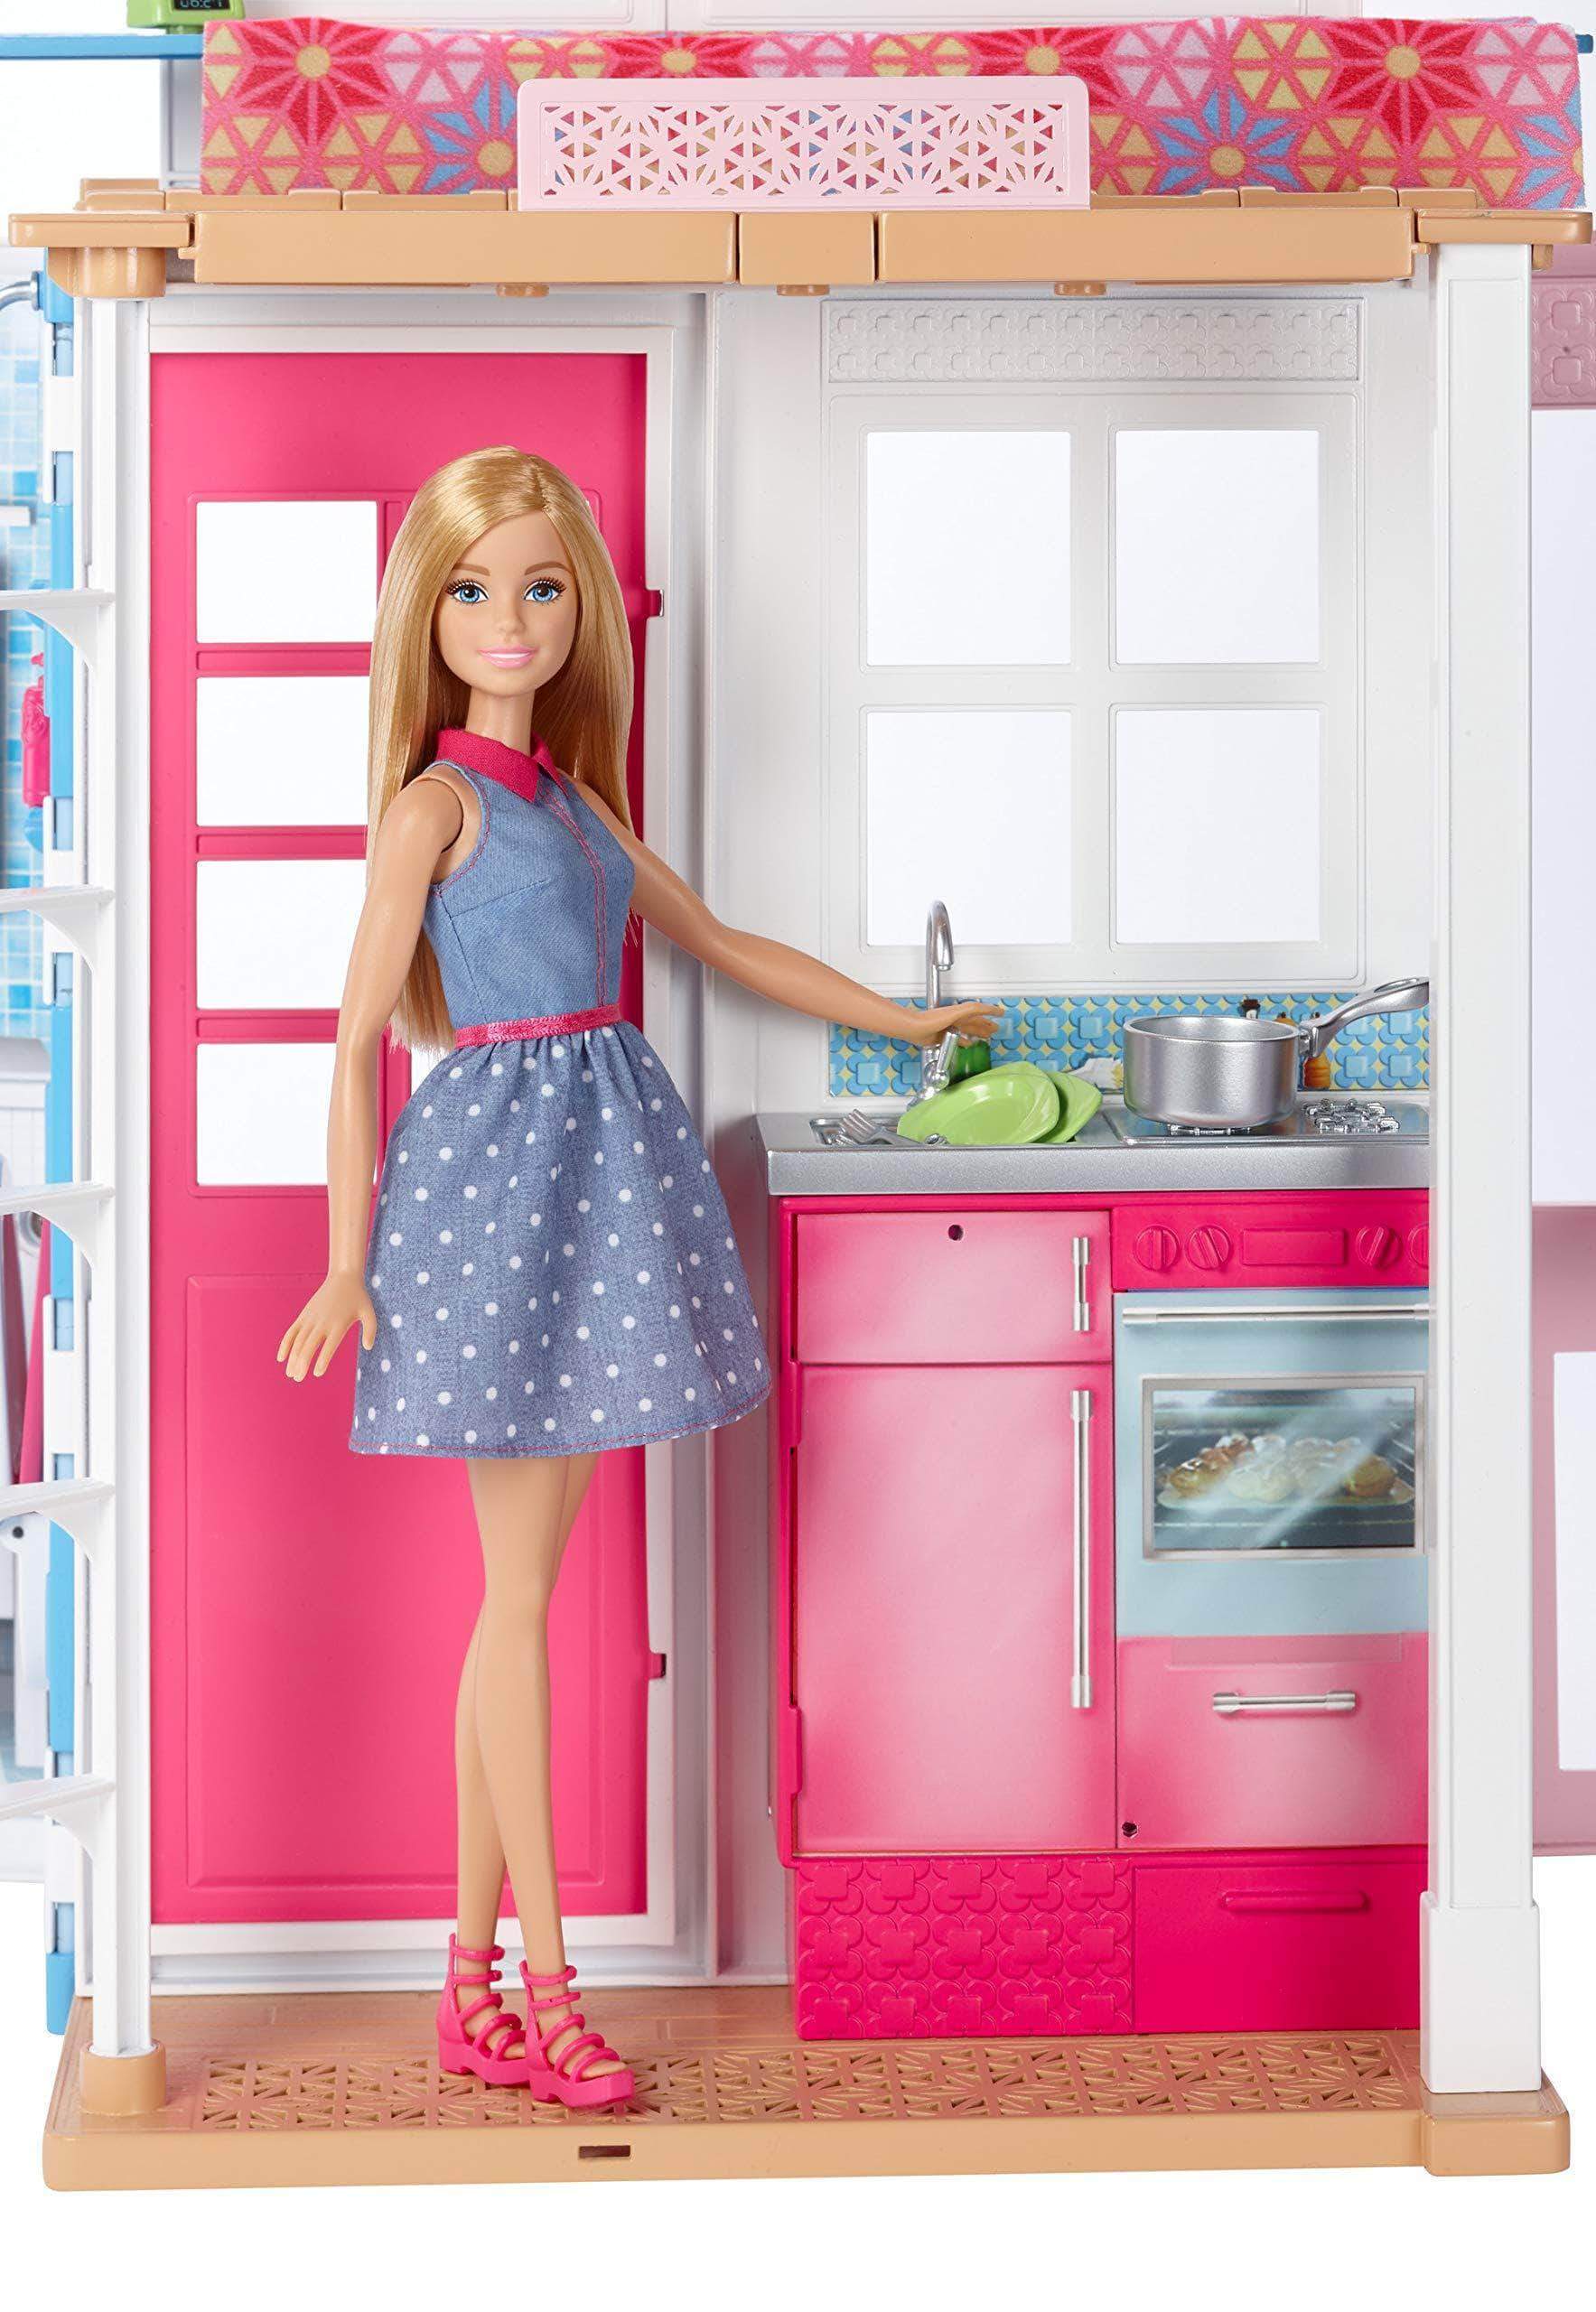 Кукла барби 2. Маттел домик для Барби. Barbie двухэтажный домик dvv47/dvv48. Дом Барби Маттель. Домик кукольный Barbie Mattel.